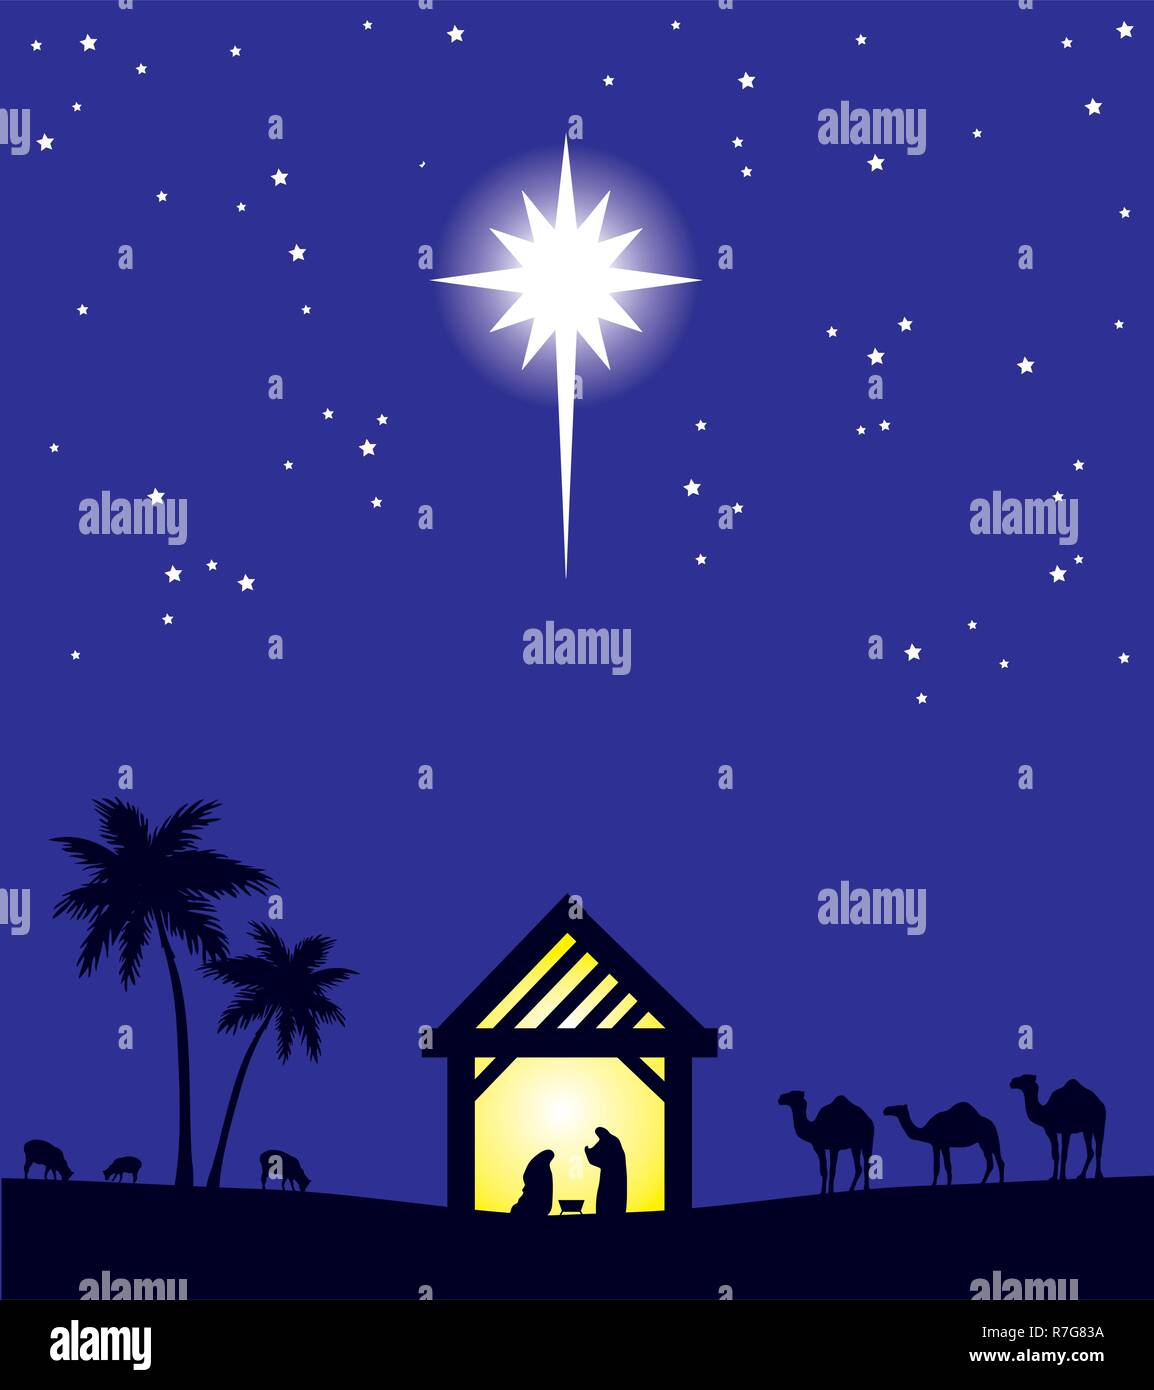 Sfondi Natalizi Nativita.Illustrazione Vettoriale Della Nativita Scena Cristiana Sfondo Di Natale Immagine E Vettoriale Alamy